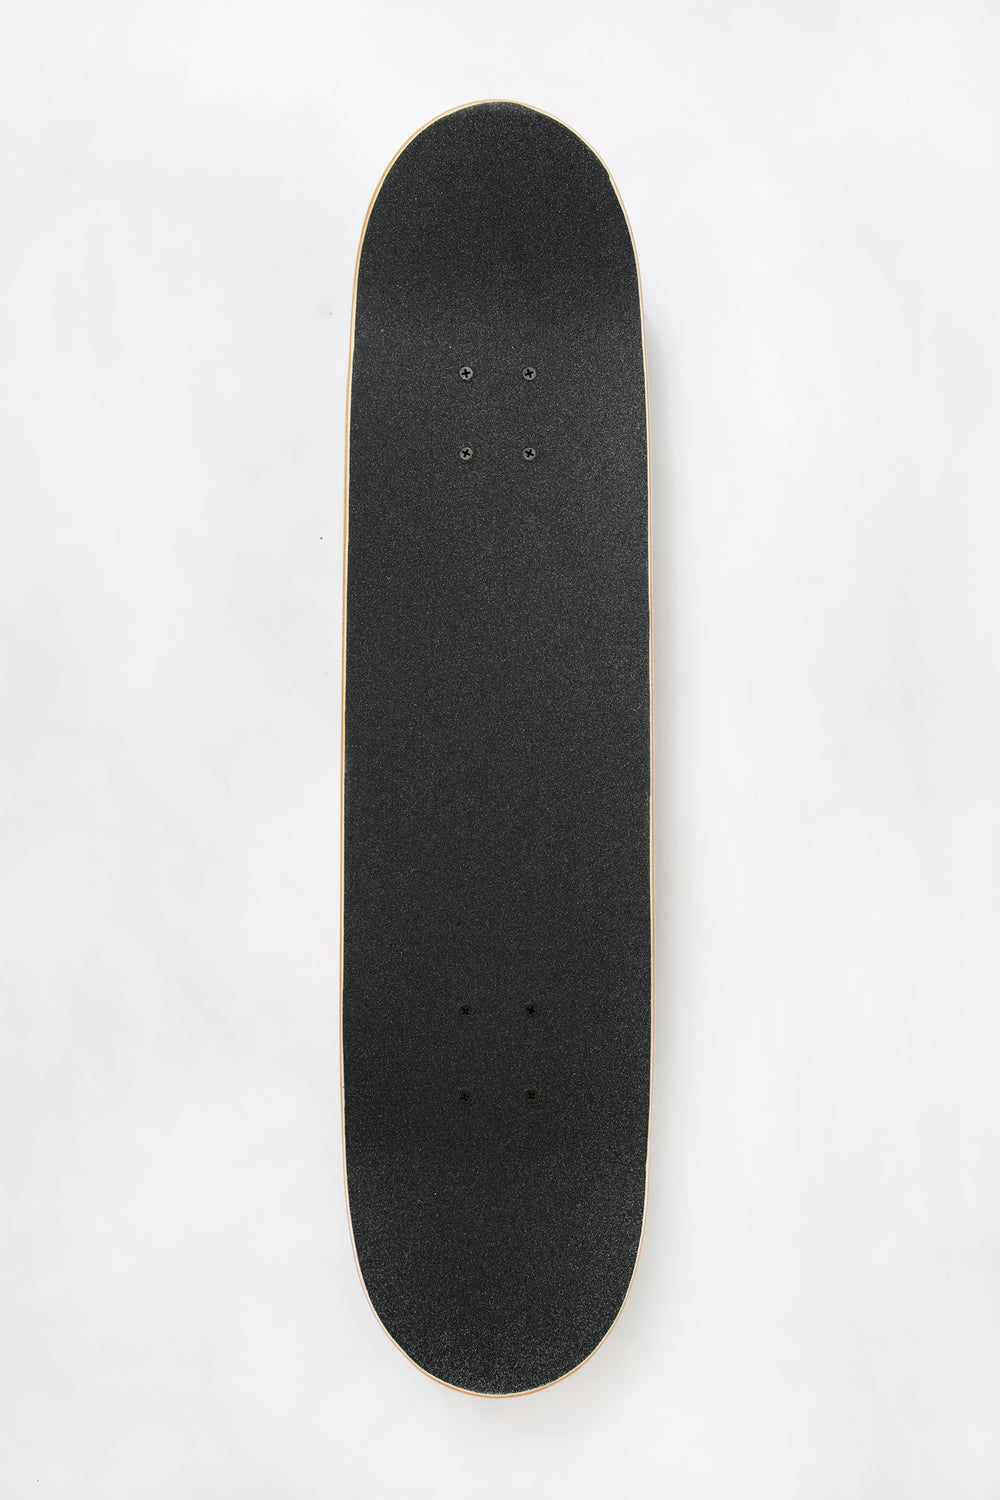 Skateboard Imprimé Geisha Death Valley 7.75